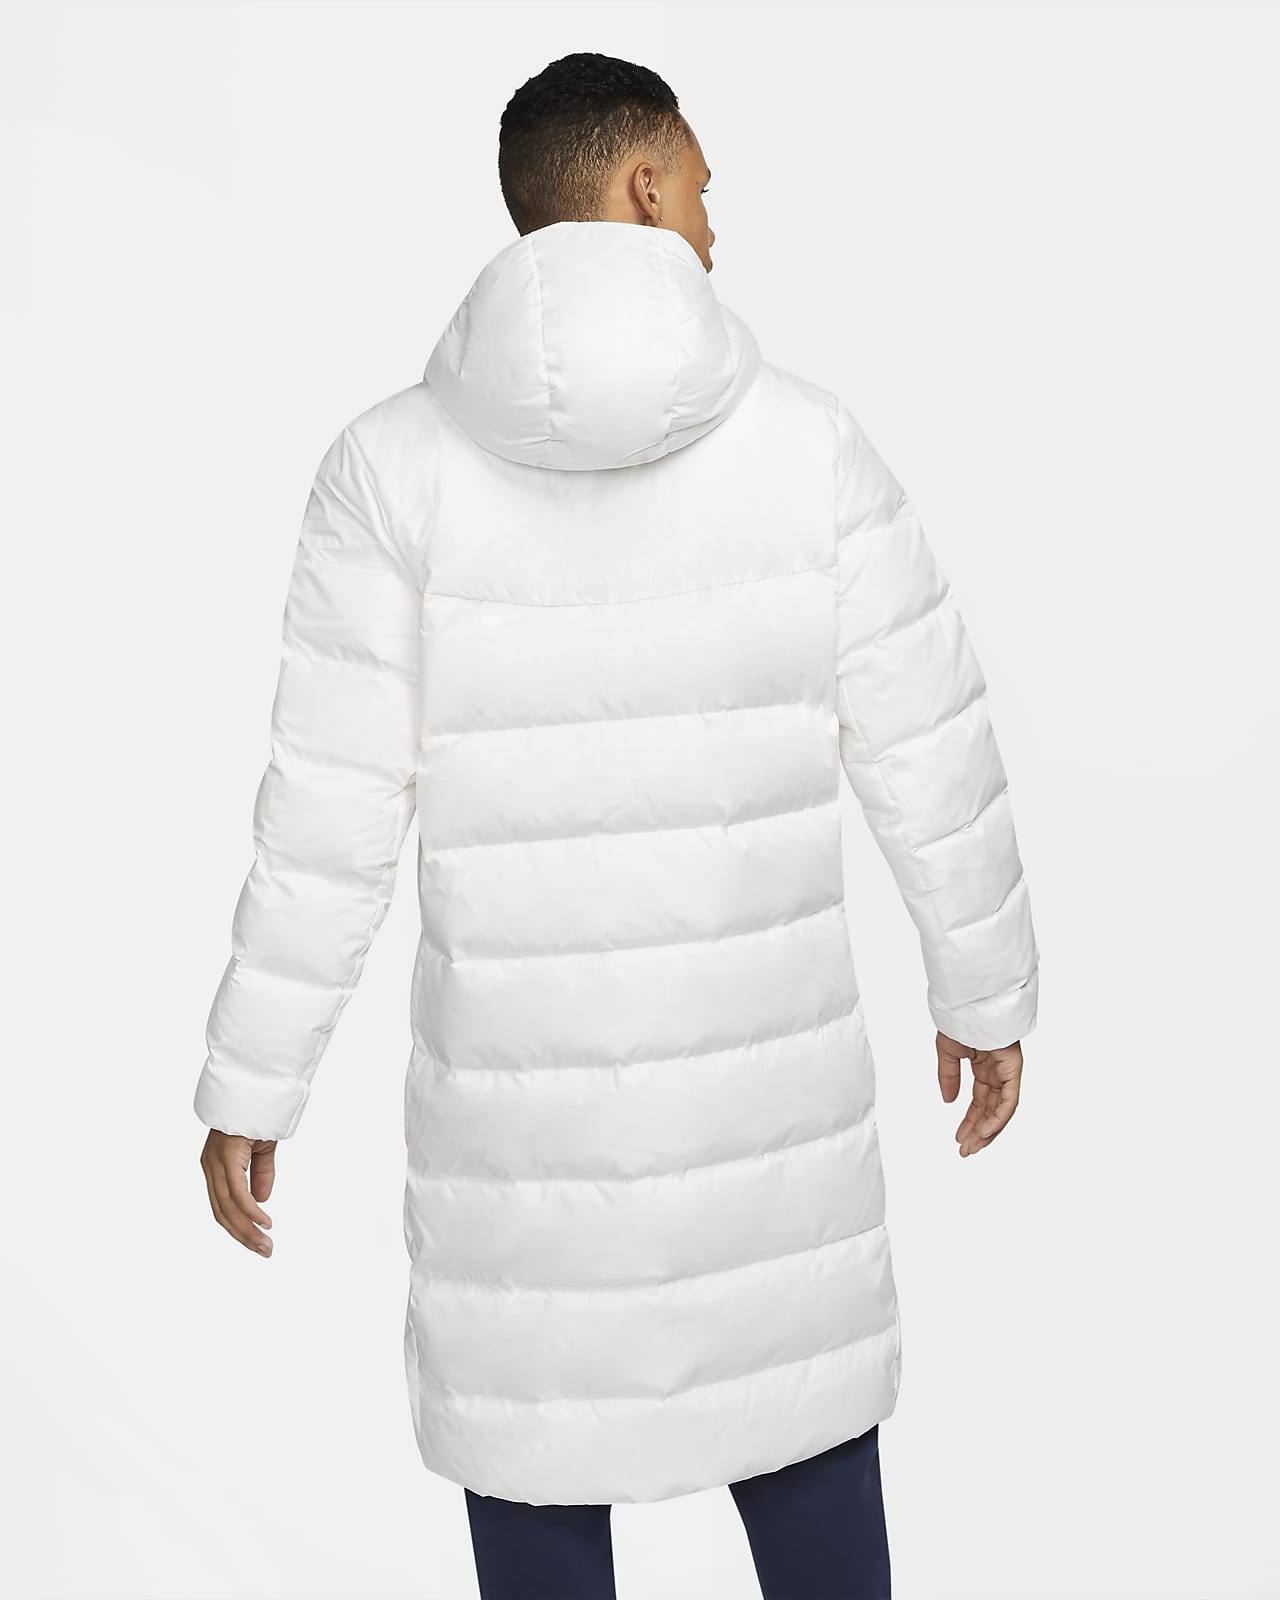 chelsea fc nike winter jacket